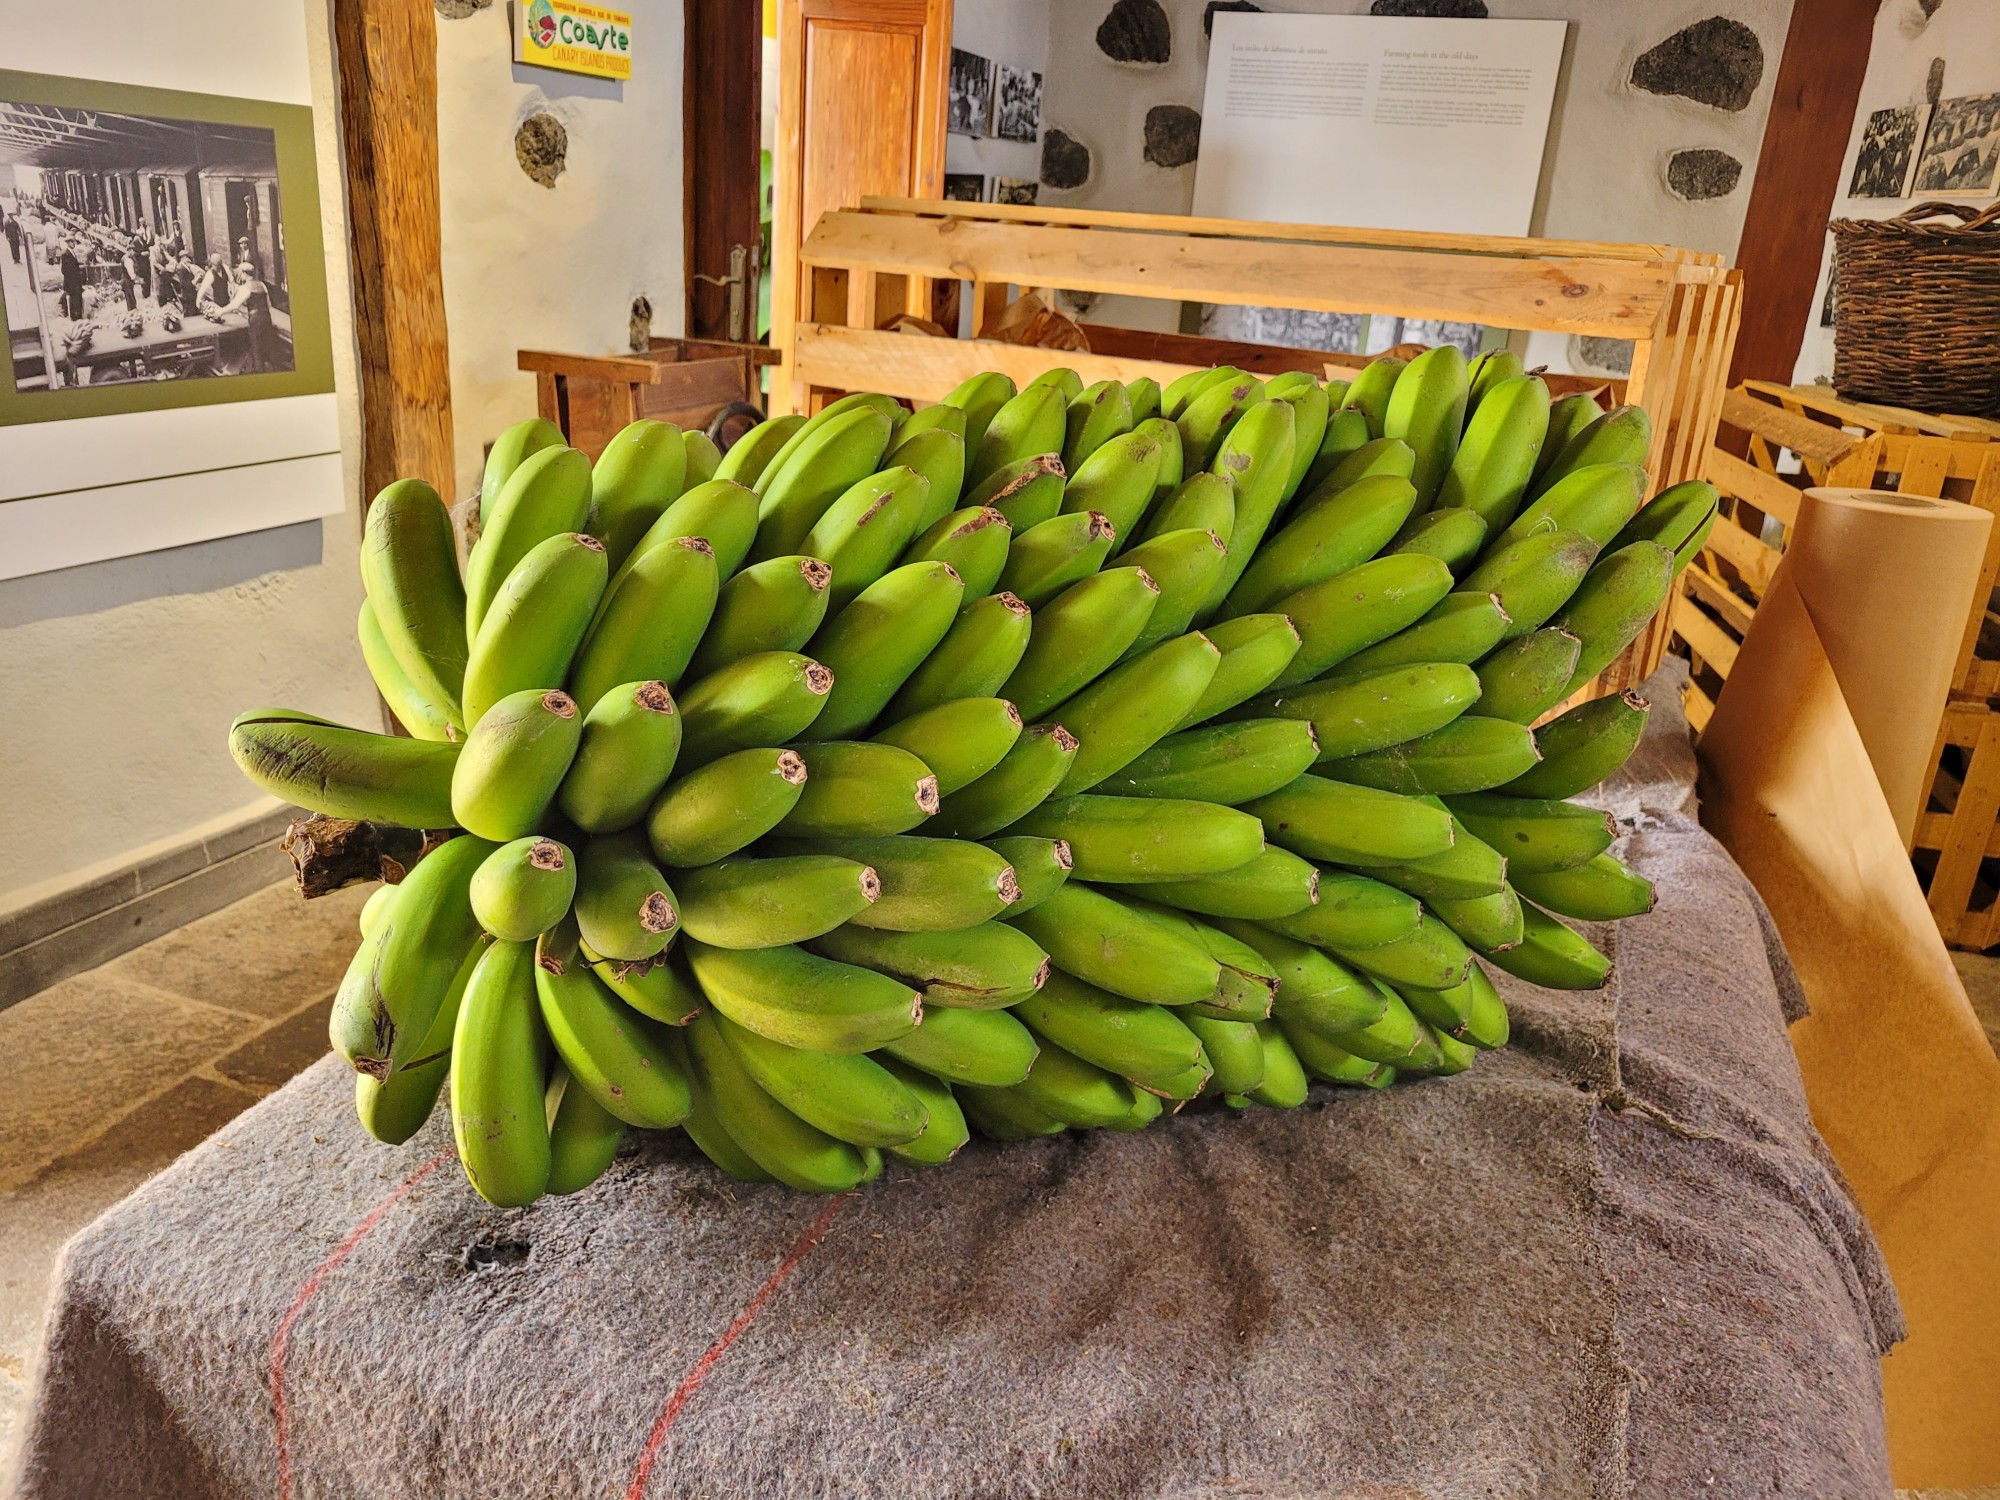 Foto: Casa del plátano - Icod de los Vinos (Santa Cruz de Tenerife), España